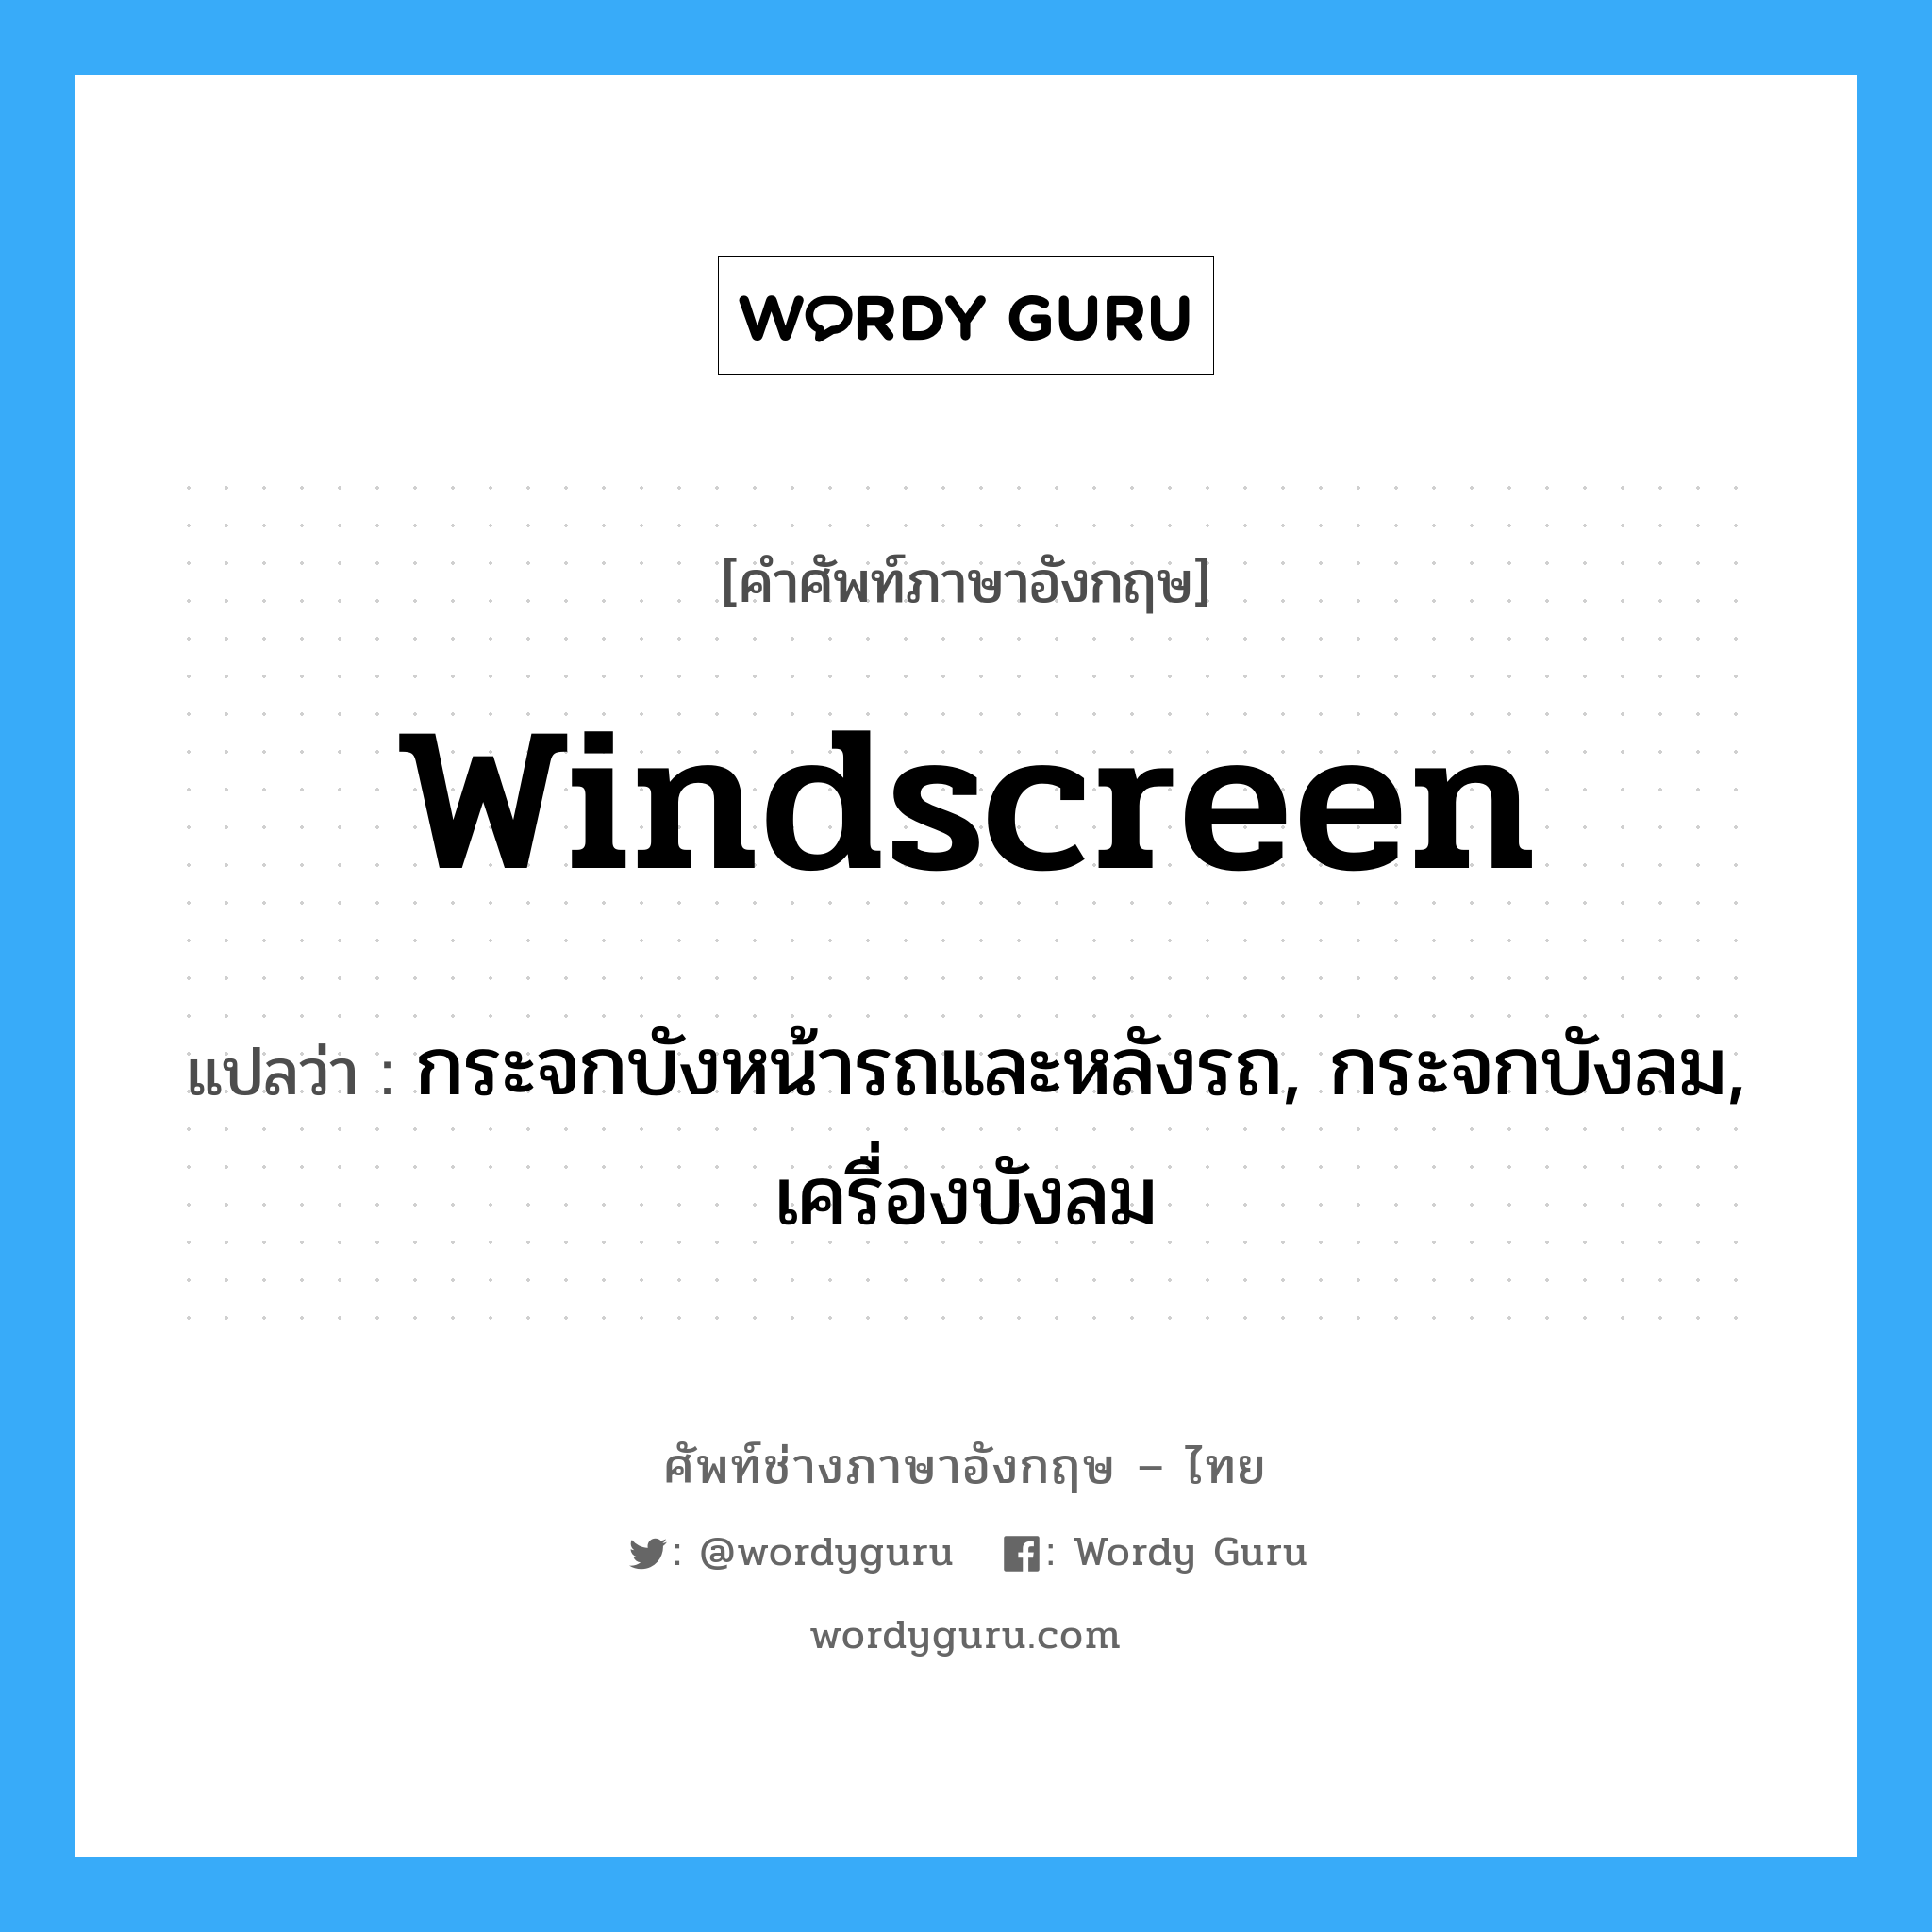 windscreen แปลว่า?, คำศัพท์ช่างภาษาอังกฤษ - ไทย windscreen คำศัพท์ภาษาอังกฤษ windscreen แปลว่า กระจกบังหน้ารถและหลังรถ, กระจกบังลม, เครื่องบังลม